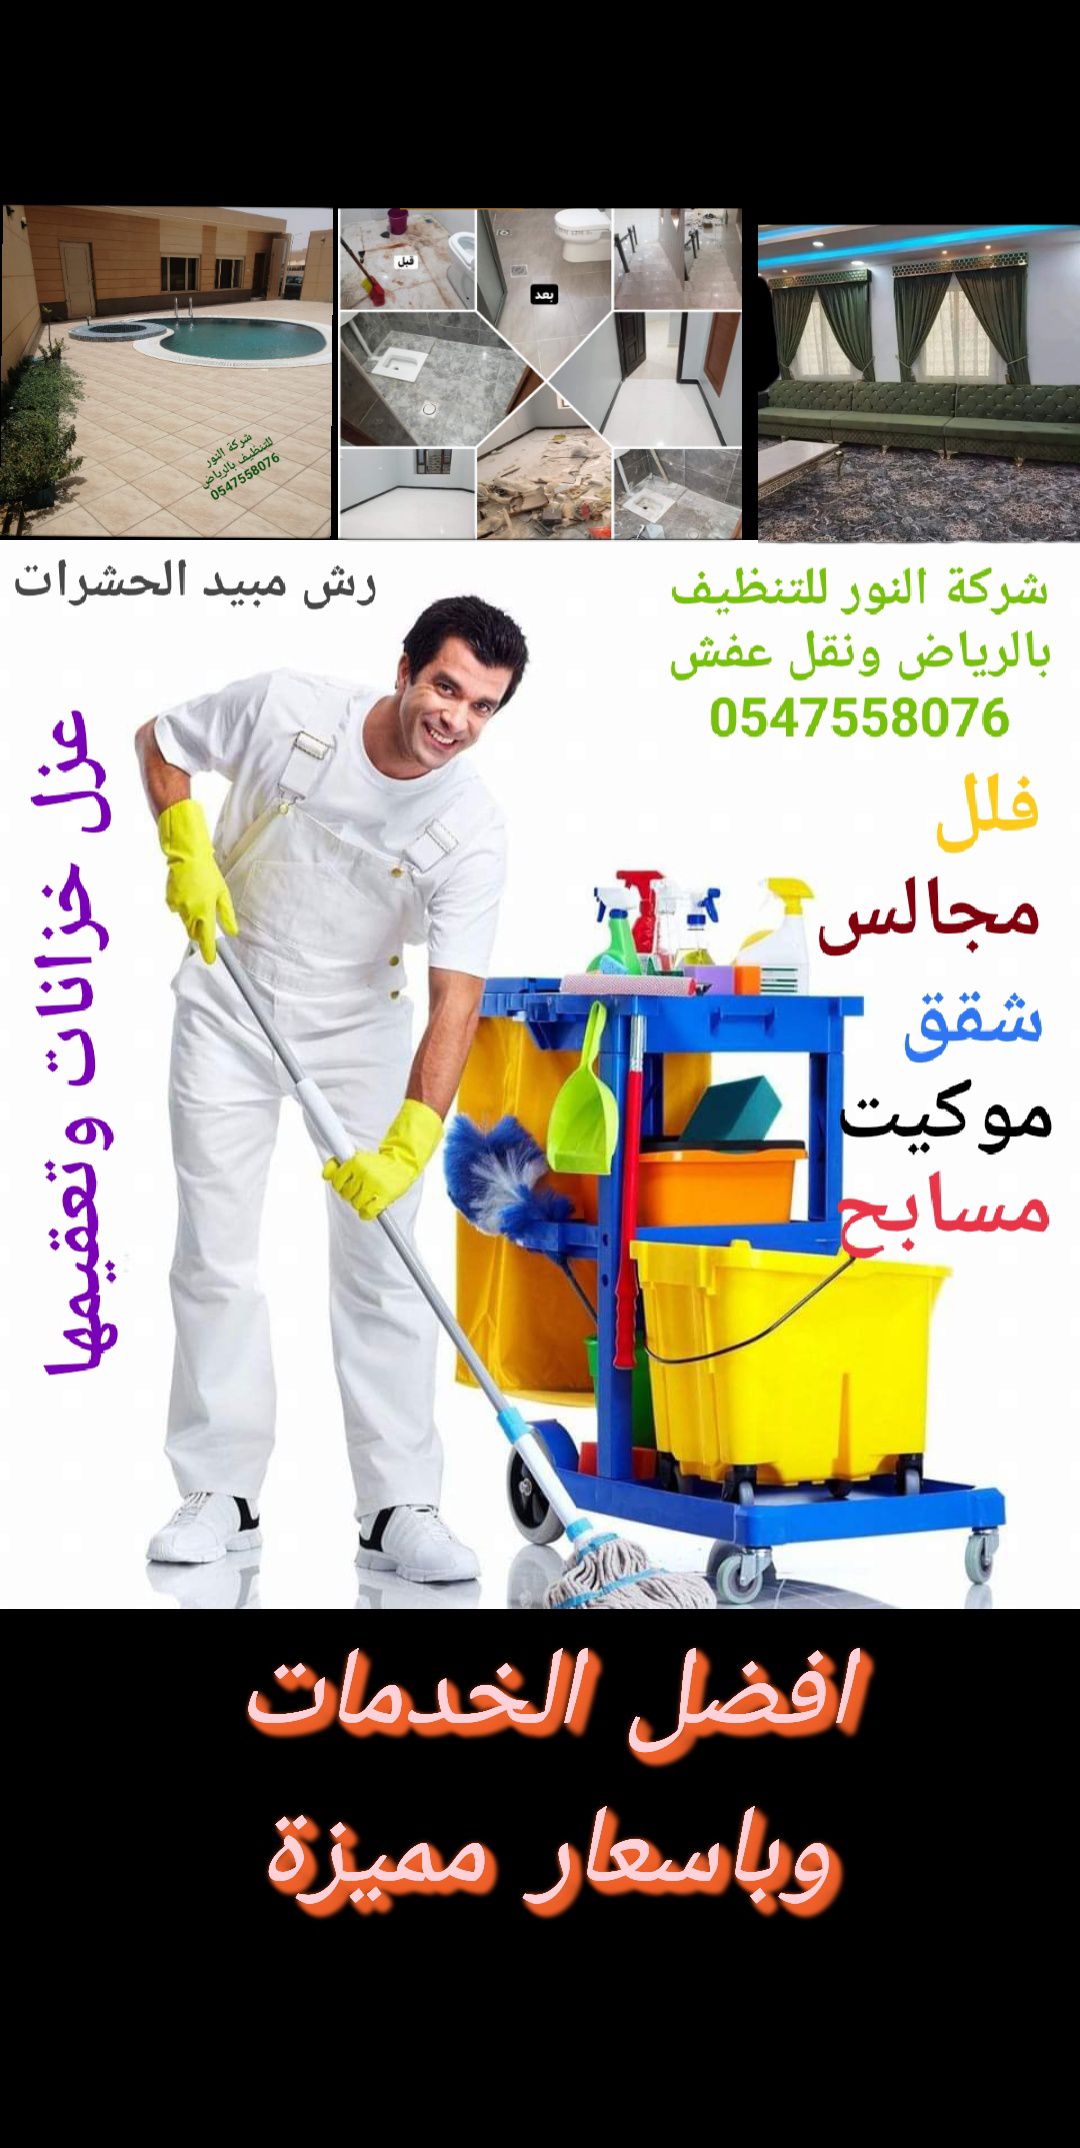 شركة تنظيف بالرياض ونقل عفش وعزل الخزانات وتعقيمها 0547558076